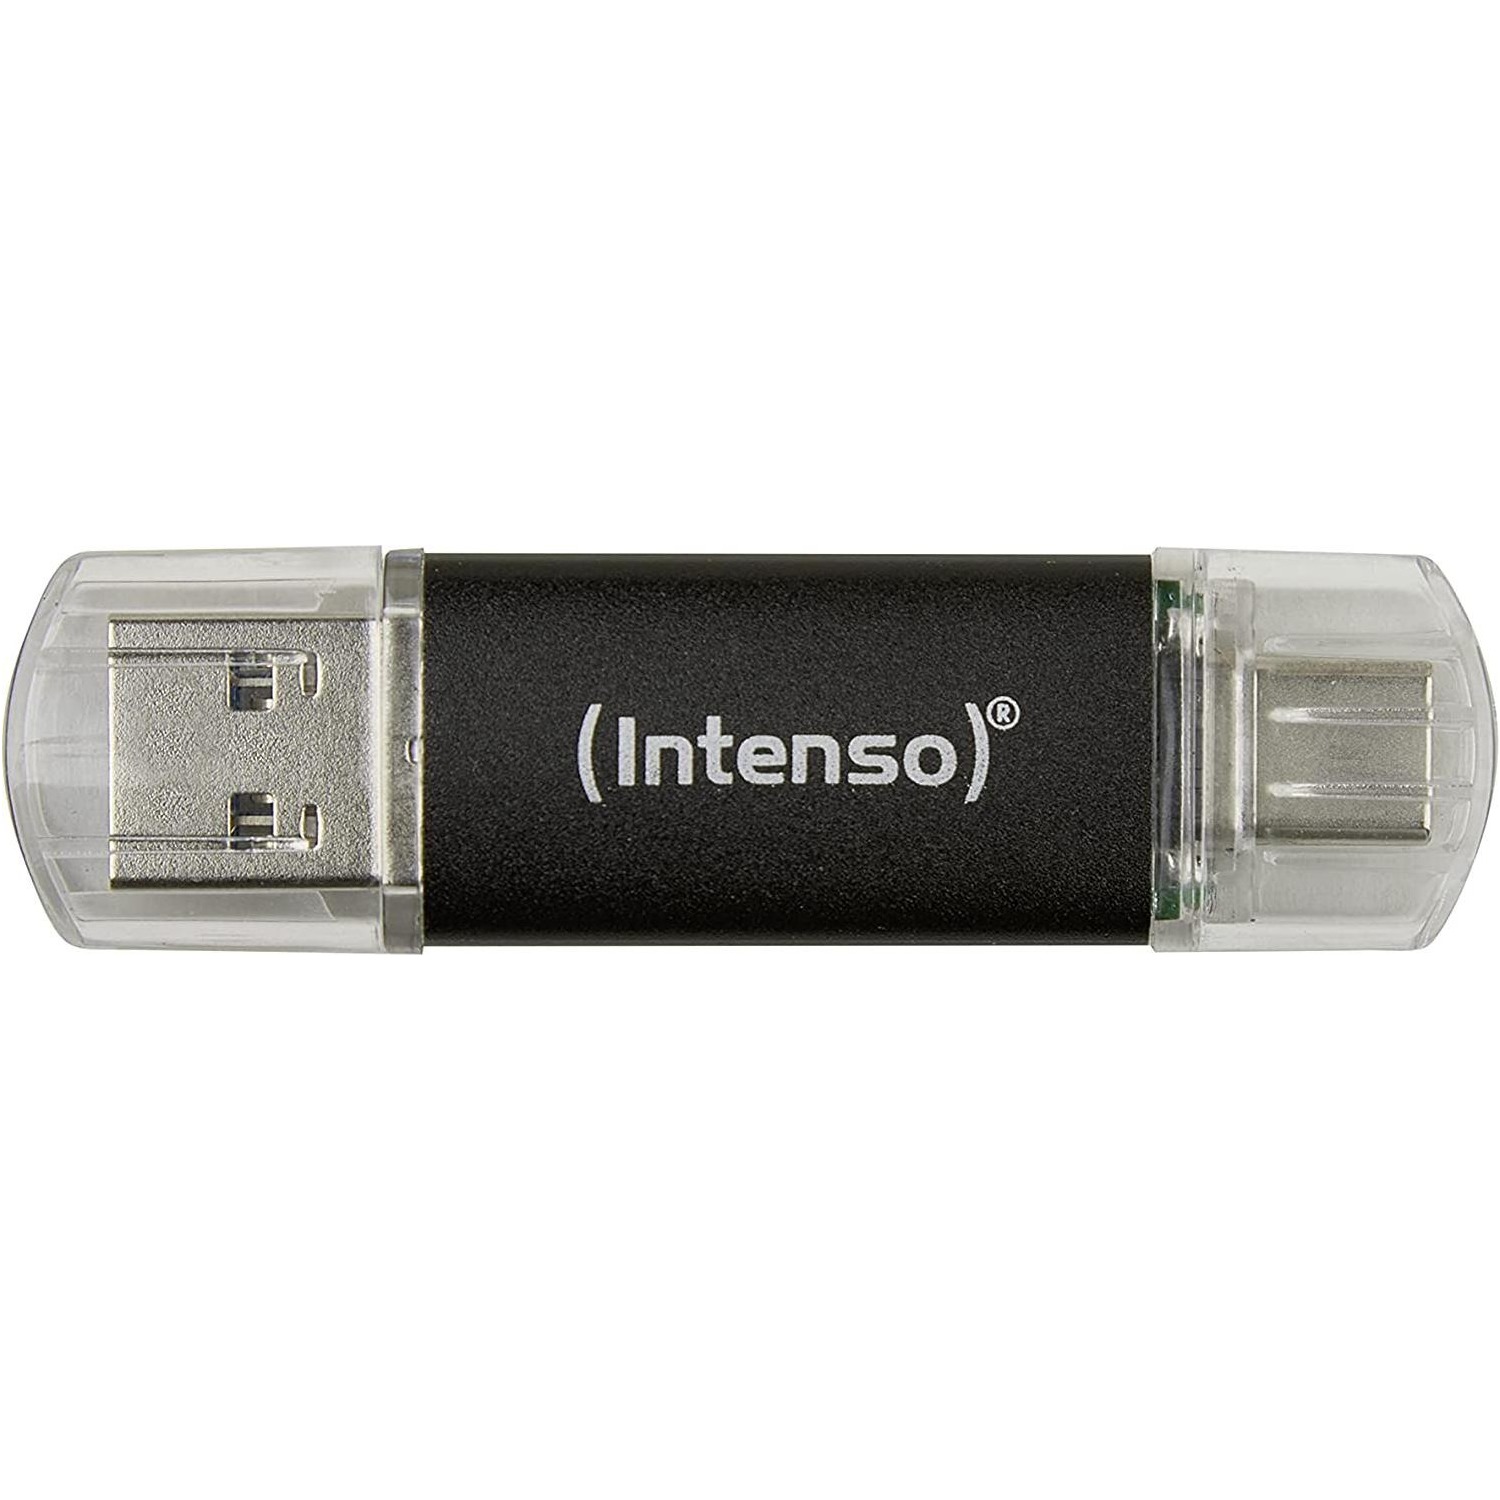 Immagine per Memoria USB Intenso 3.0 con type-c 32GB da DIMOStore